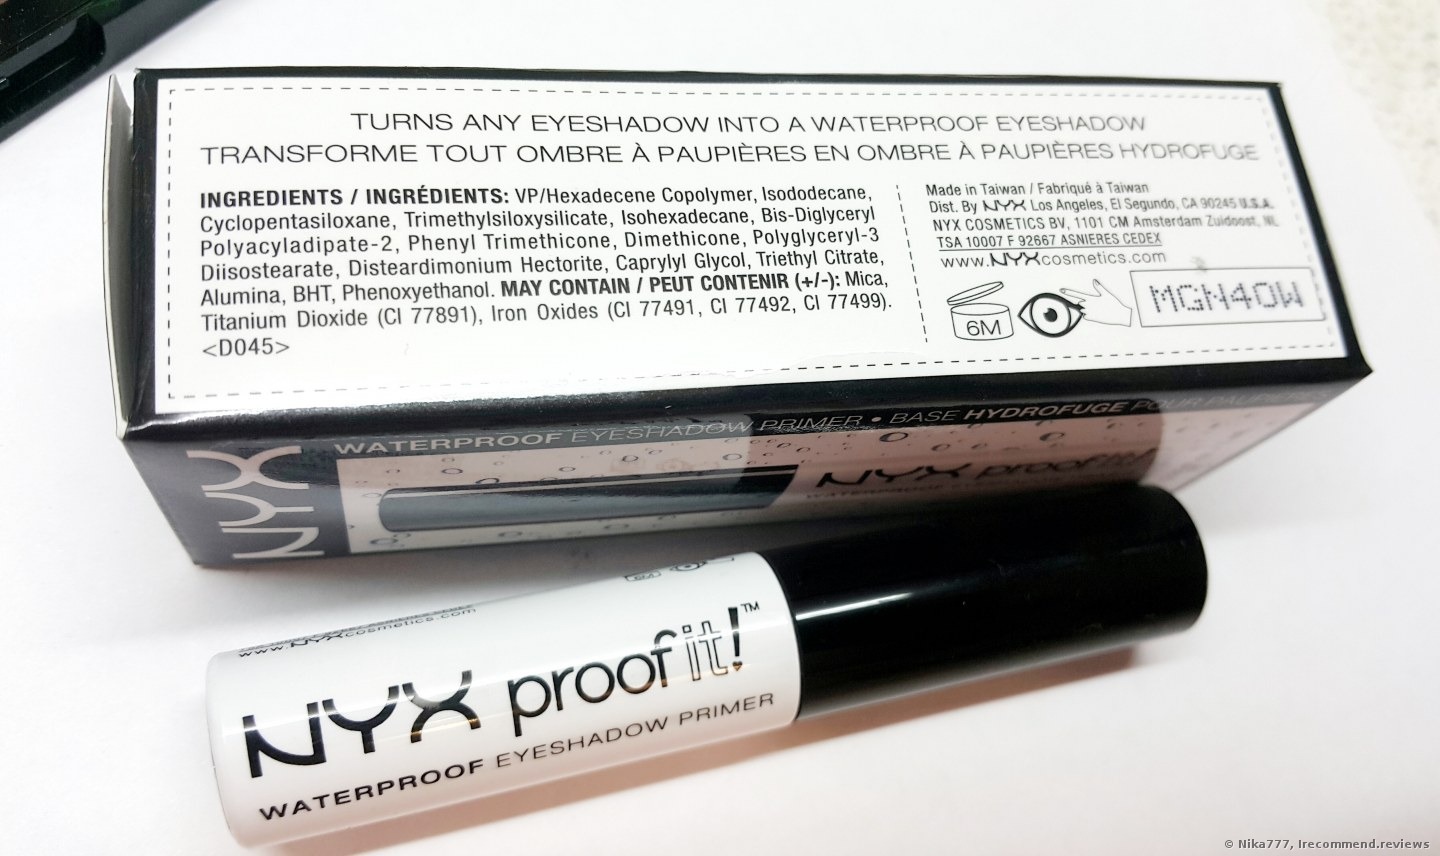 Waterproof eyeshadow primer